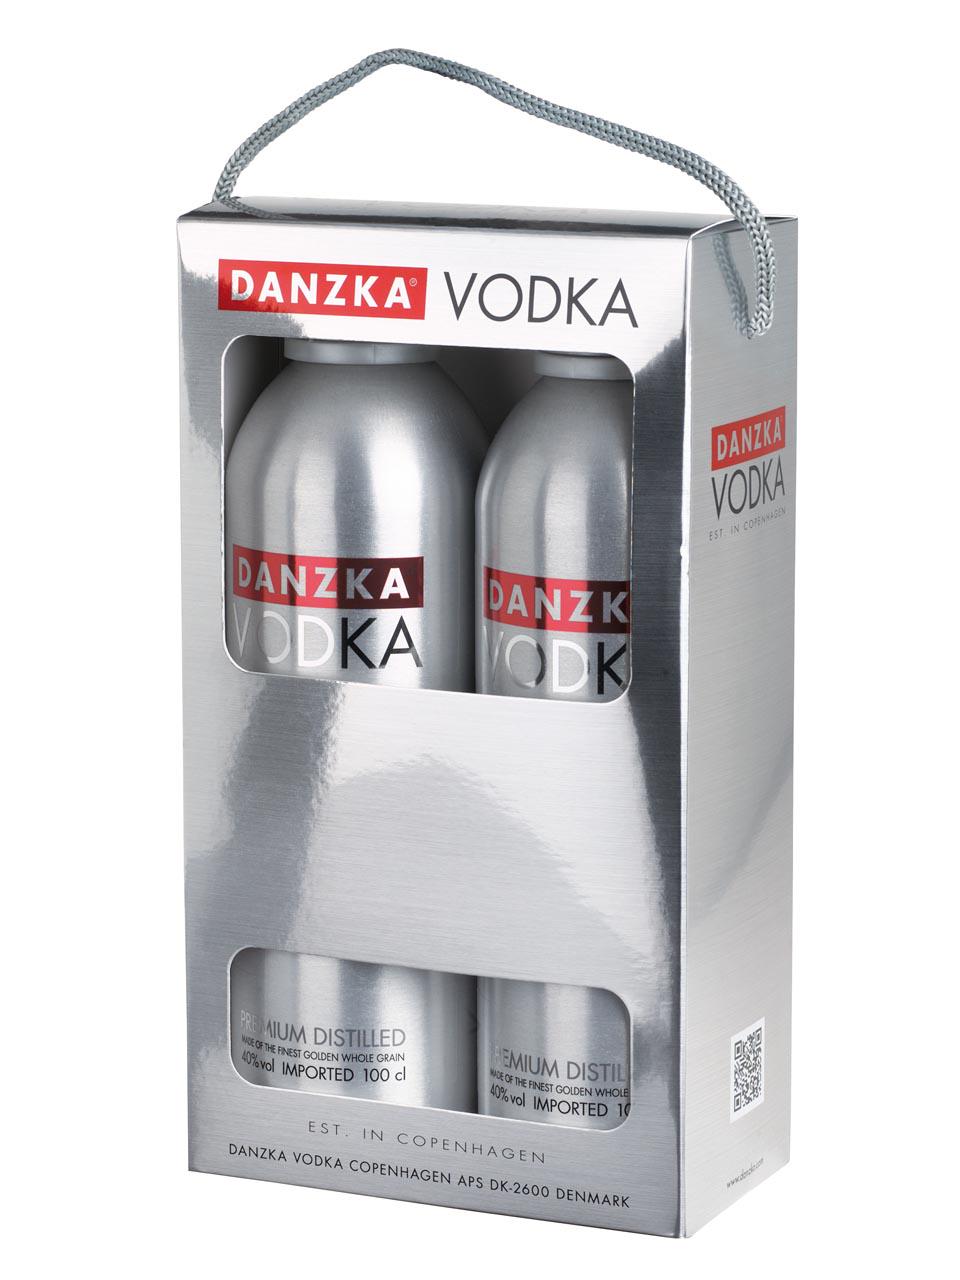 Danzka Vodka Twinpack 40% 2x1L | Frankfurt Airport Online Shopping